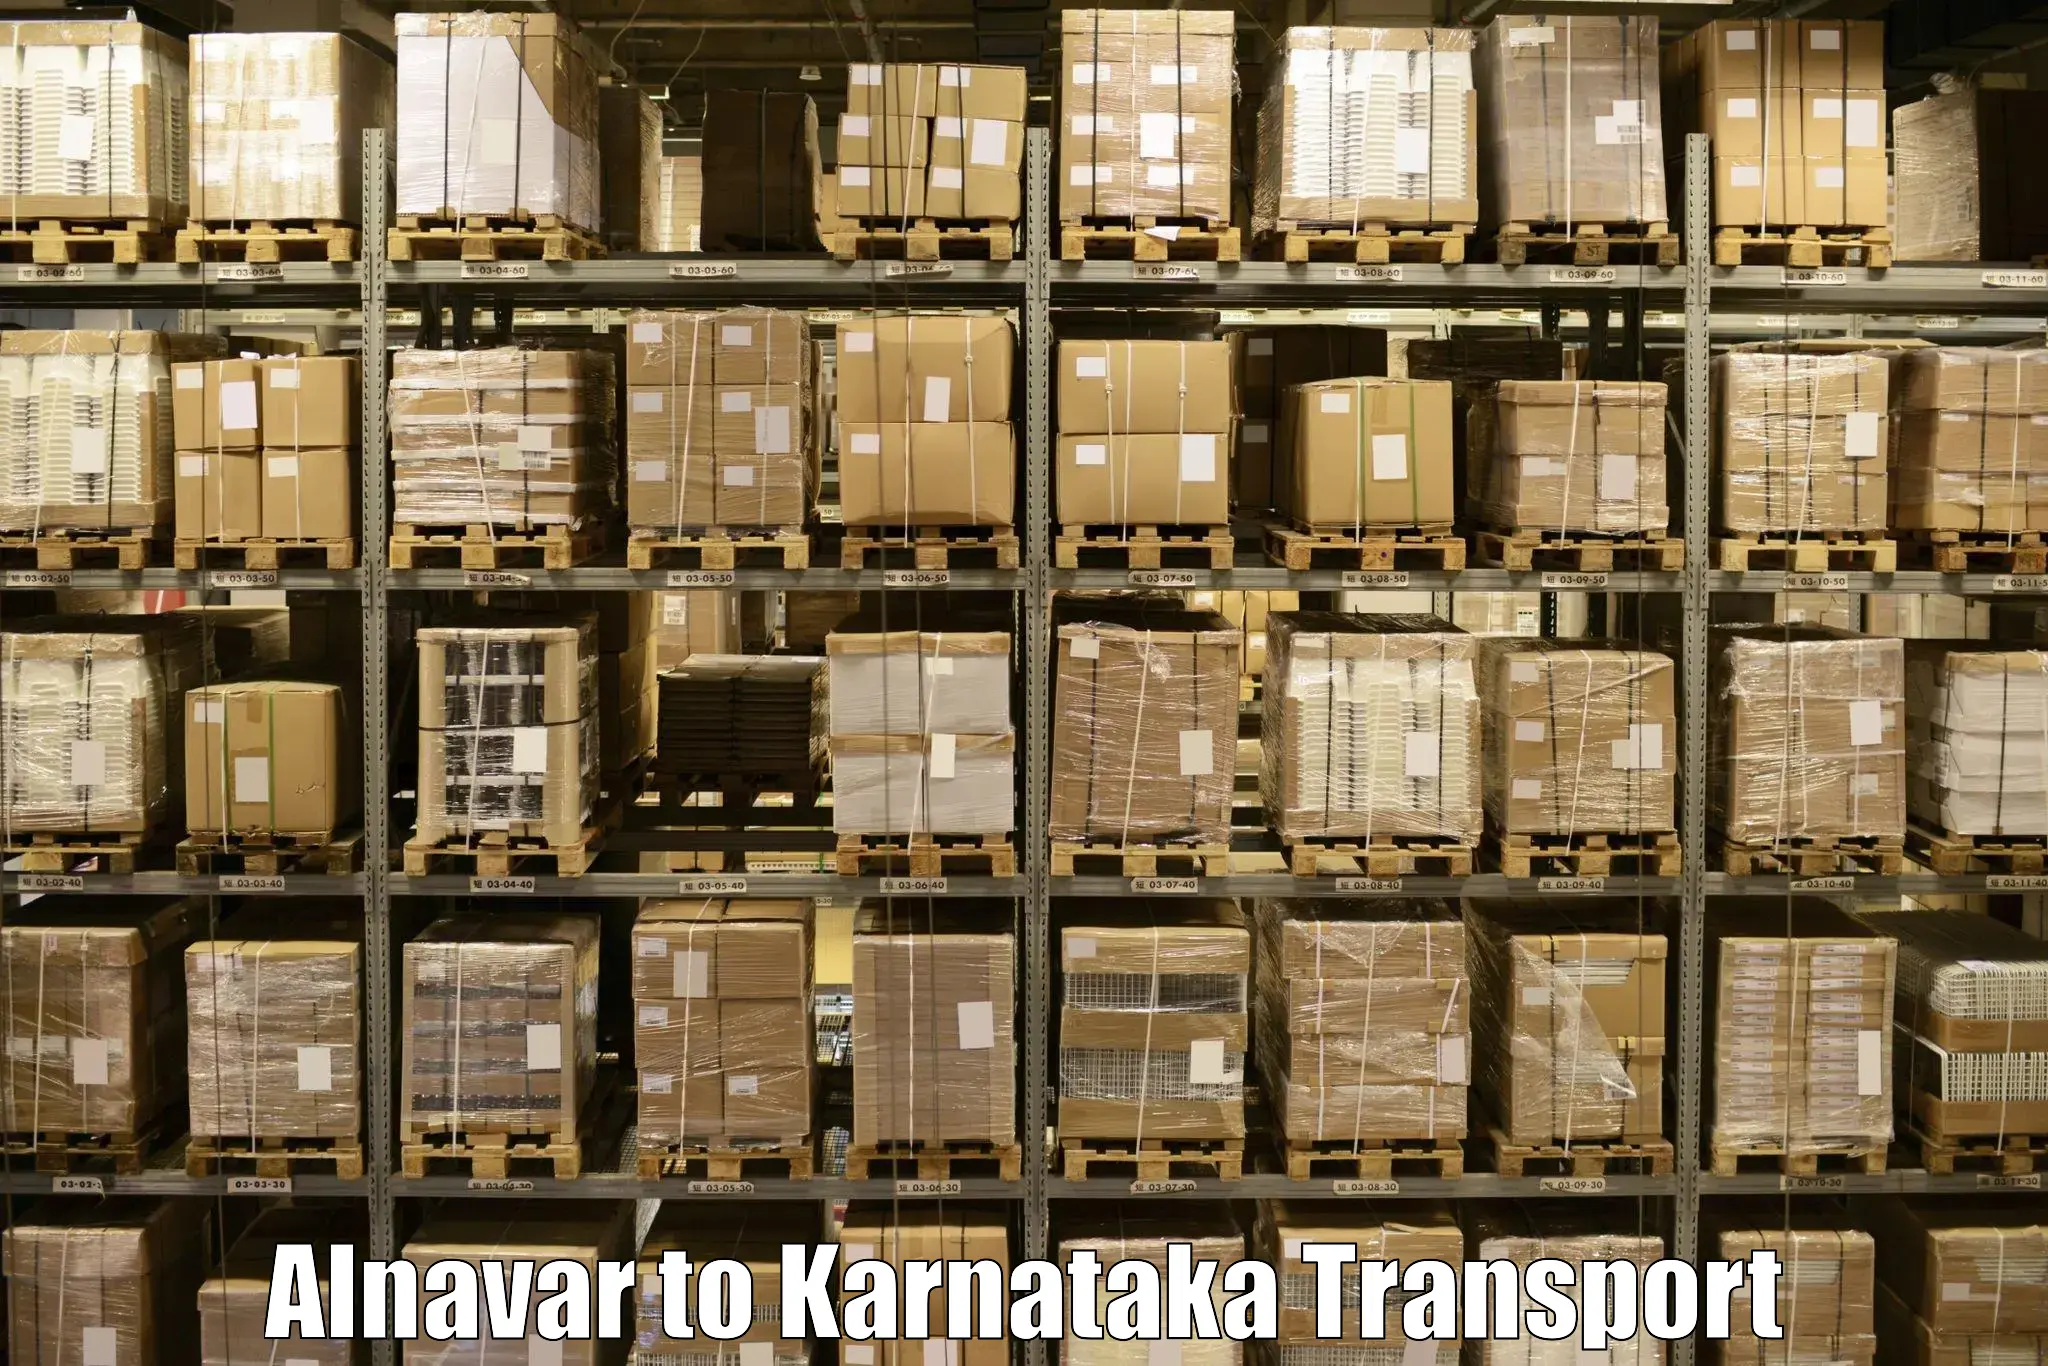 Transport services Alnavar to Karnataka